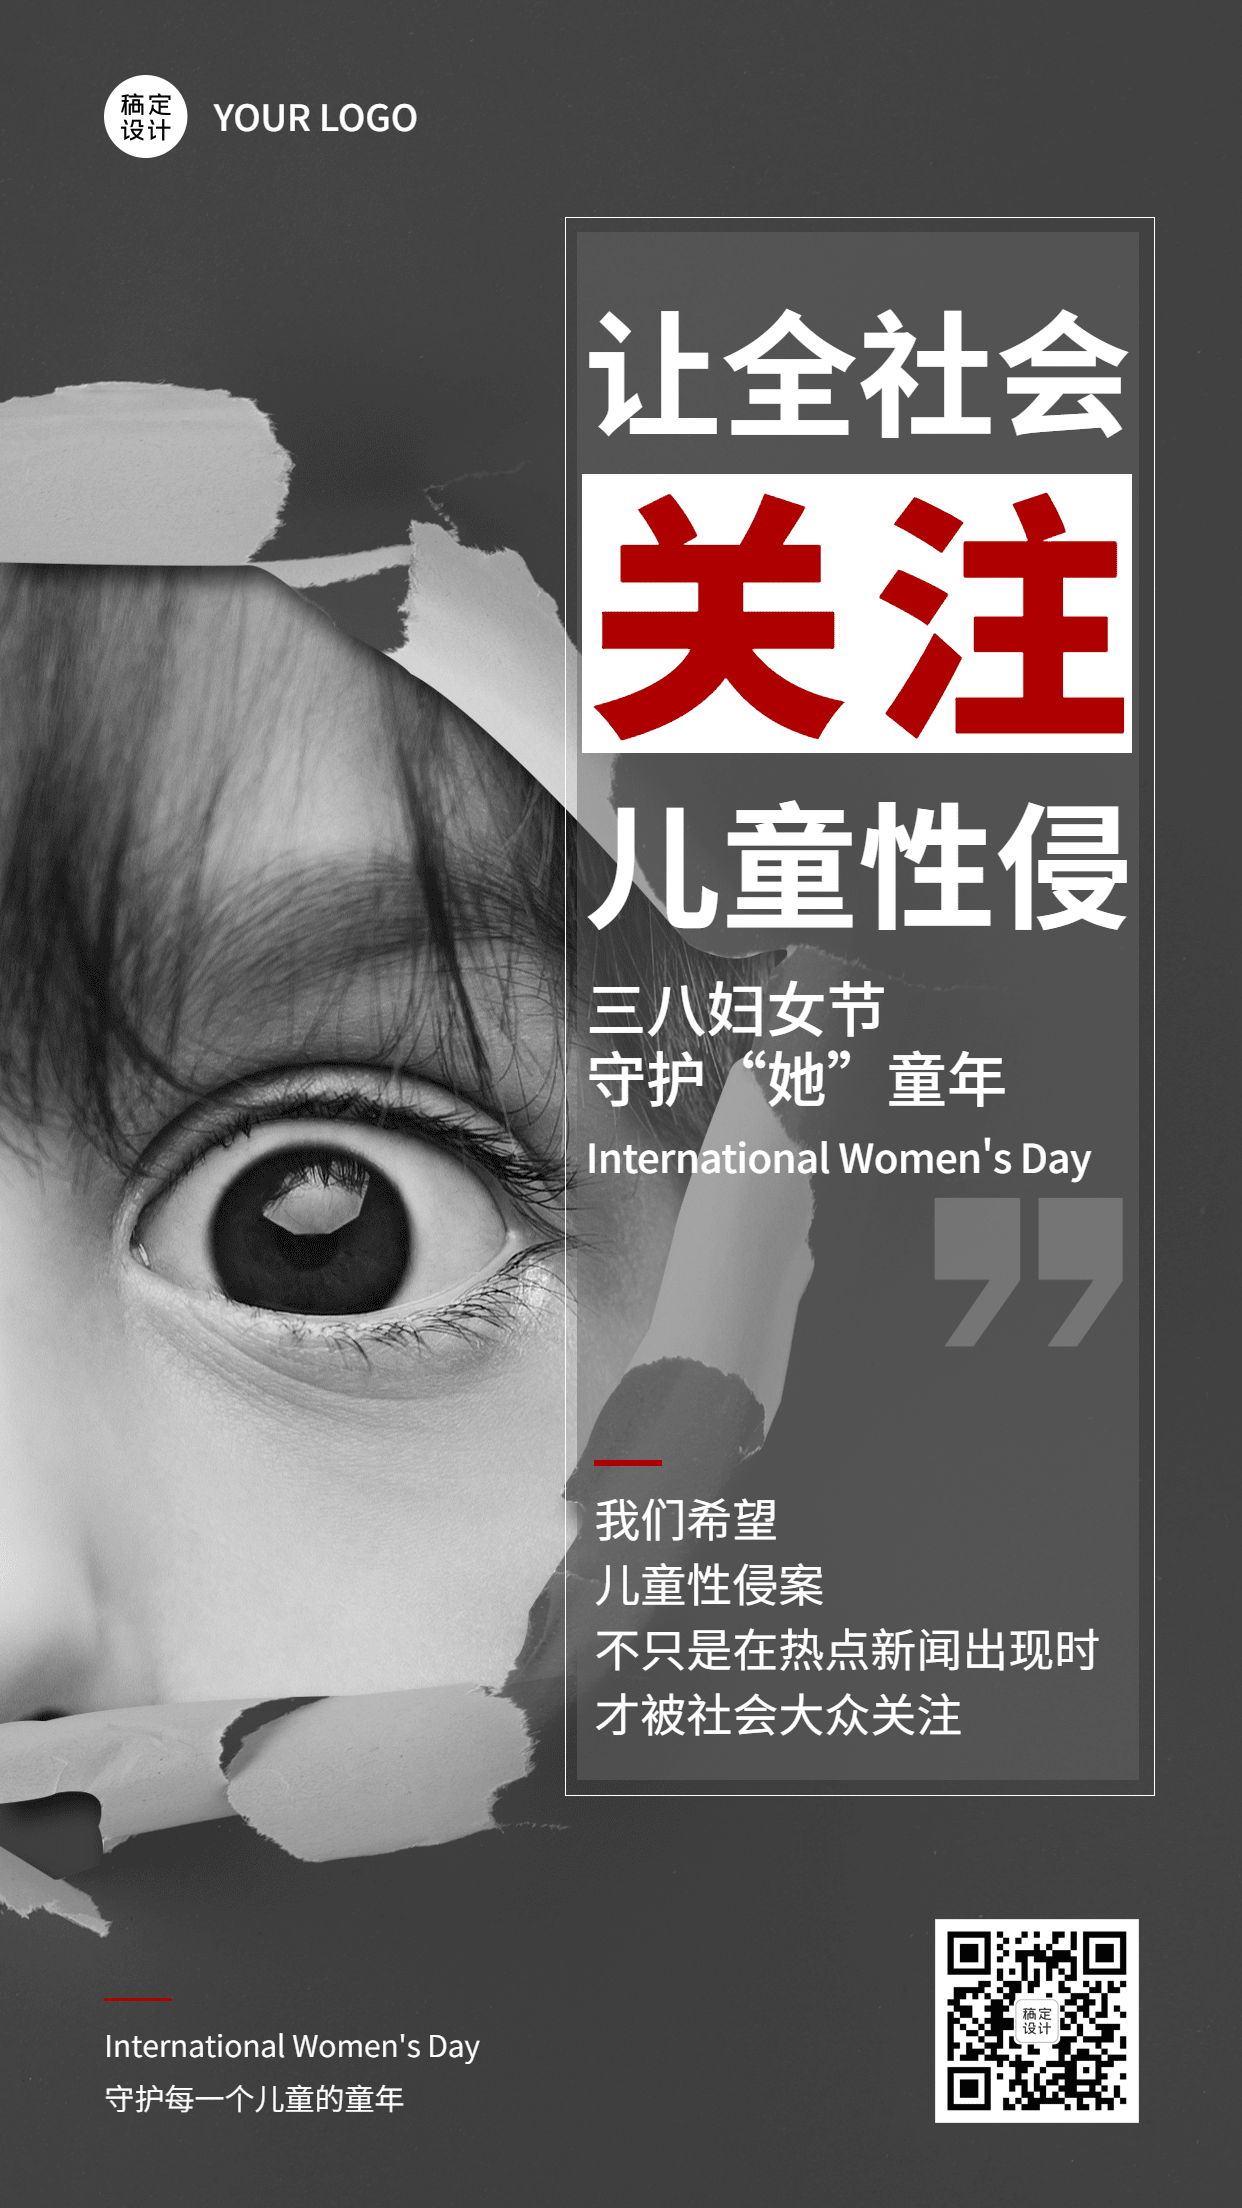 妇女节儿童安全教育防性侵宣传手机海报预览效果